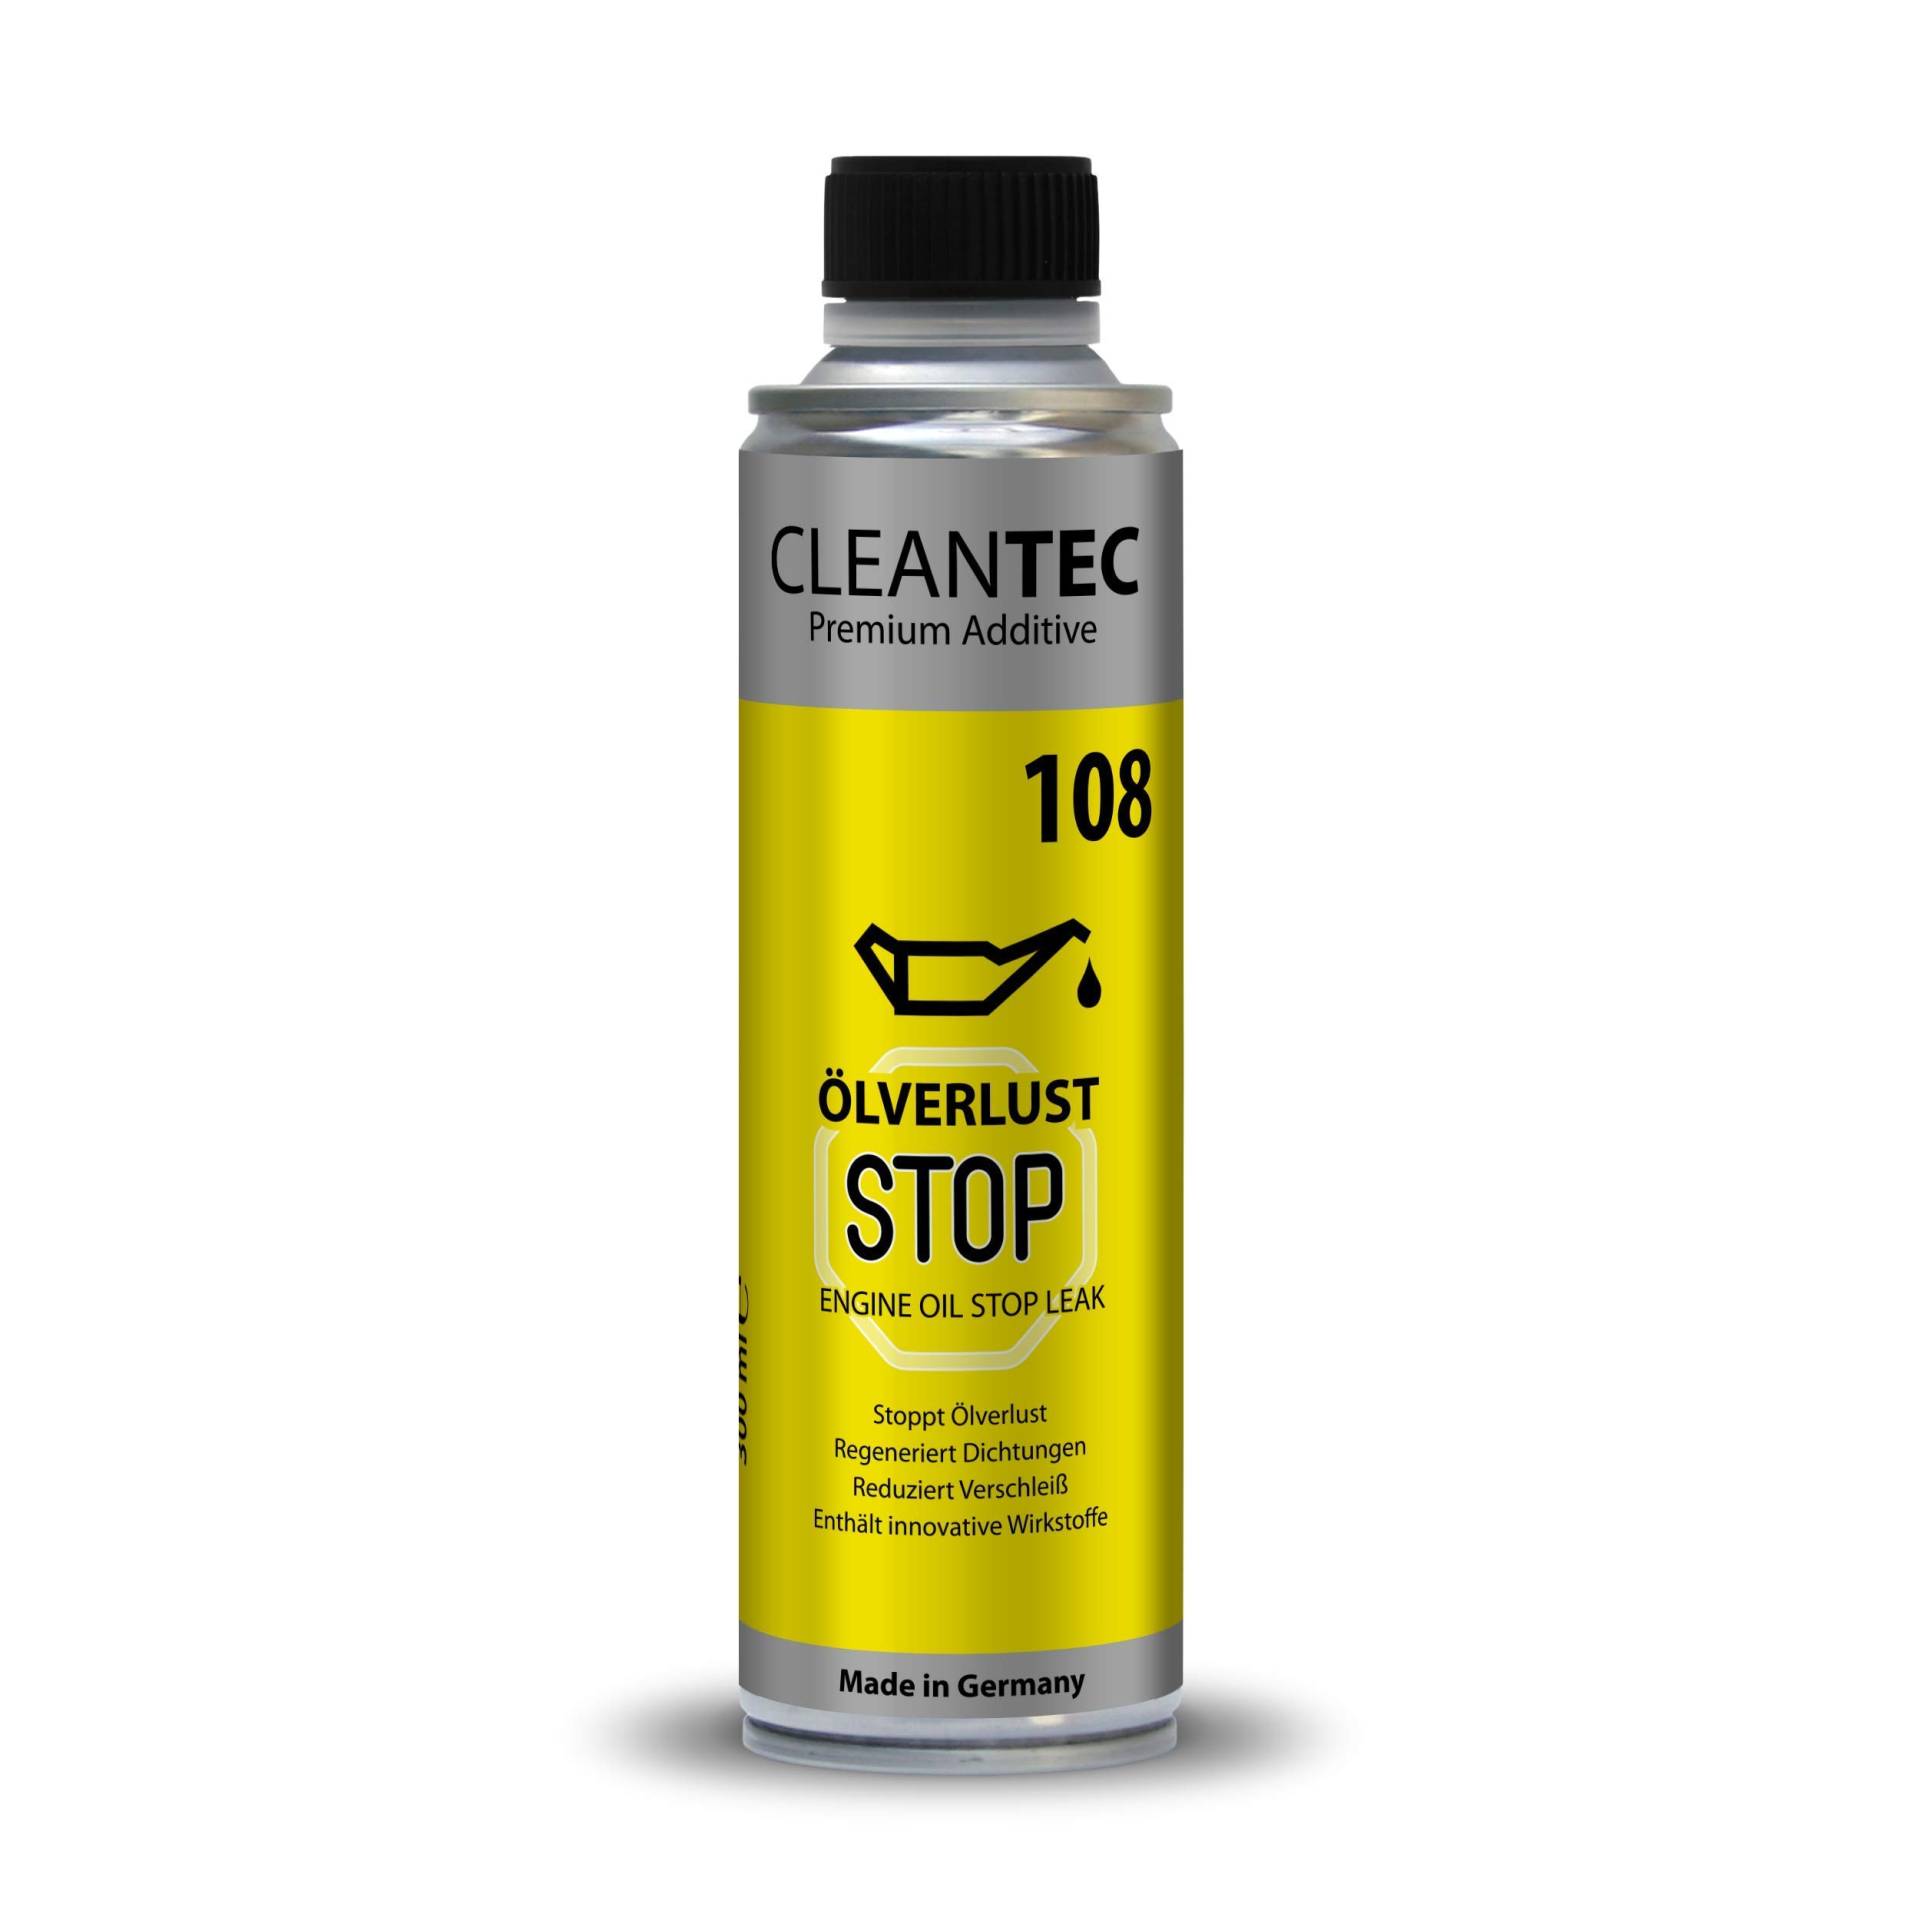 CleanTEC 108 Ölverlust Stop Regeneriert Dichtungen und verhindert Ölverlust 300ml Leck Stop Versiegelung 1L/49,66Euro (1) von cms CleanTEC GmbH